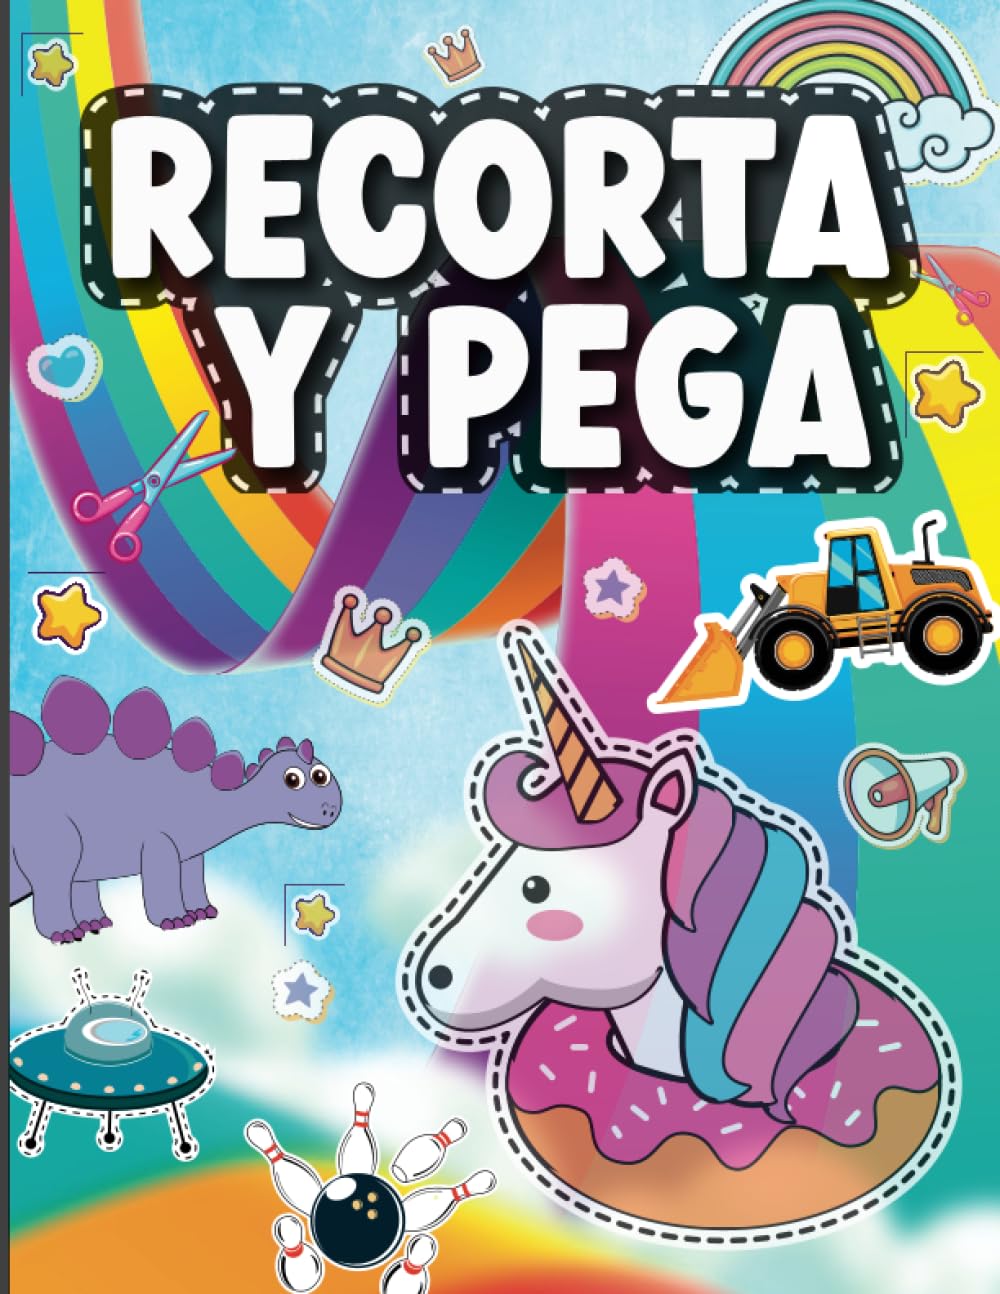 Libro: Recorta y pega - Libro de actividades para niños, con imágenes a color por Aldana Fernández